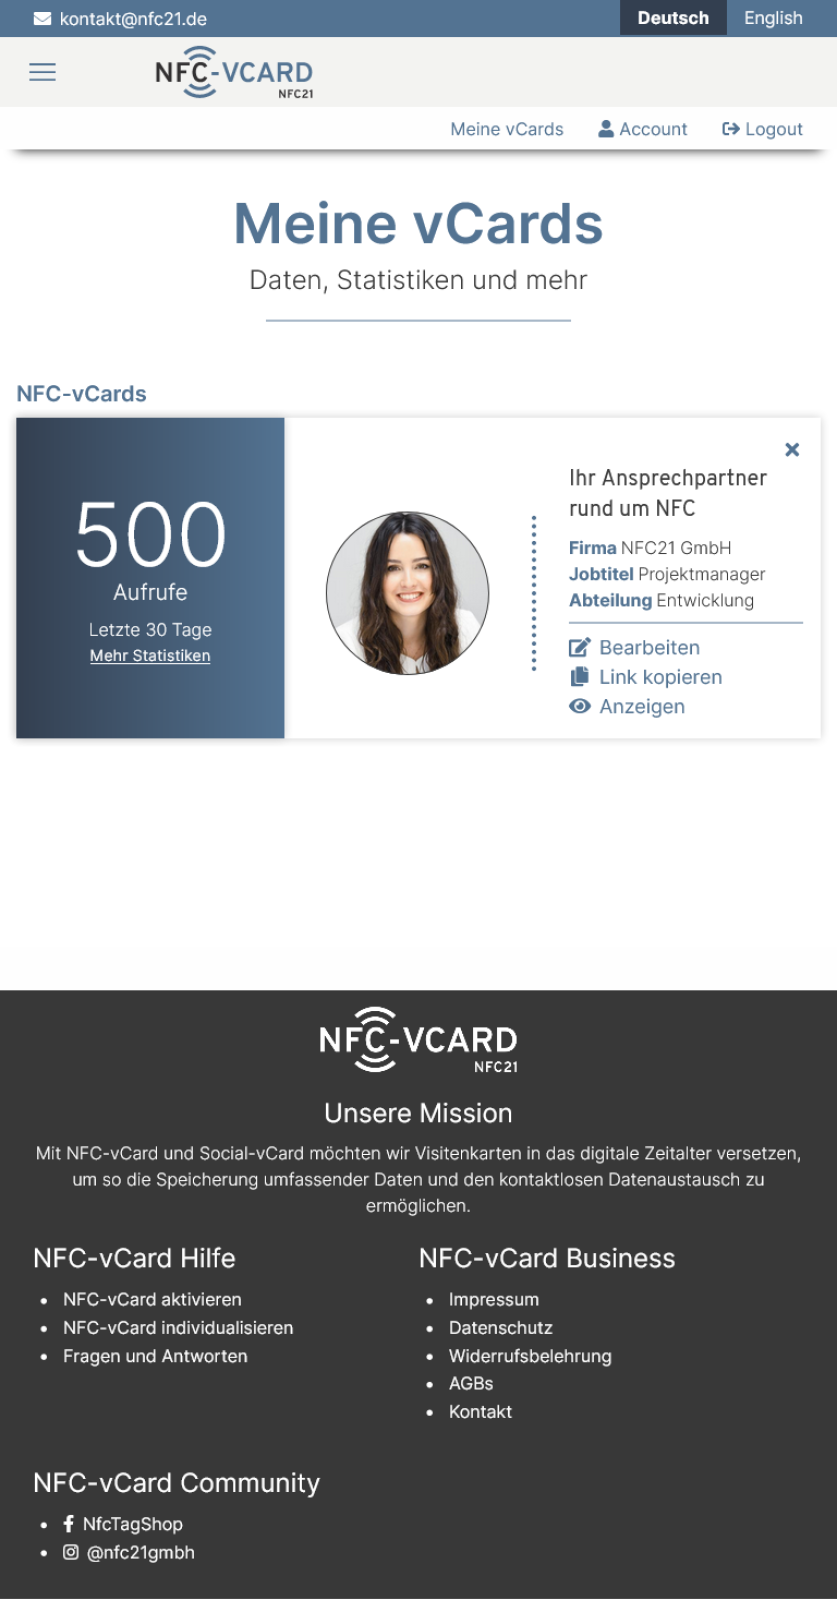 NFC-vCard - Alles im Blick